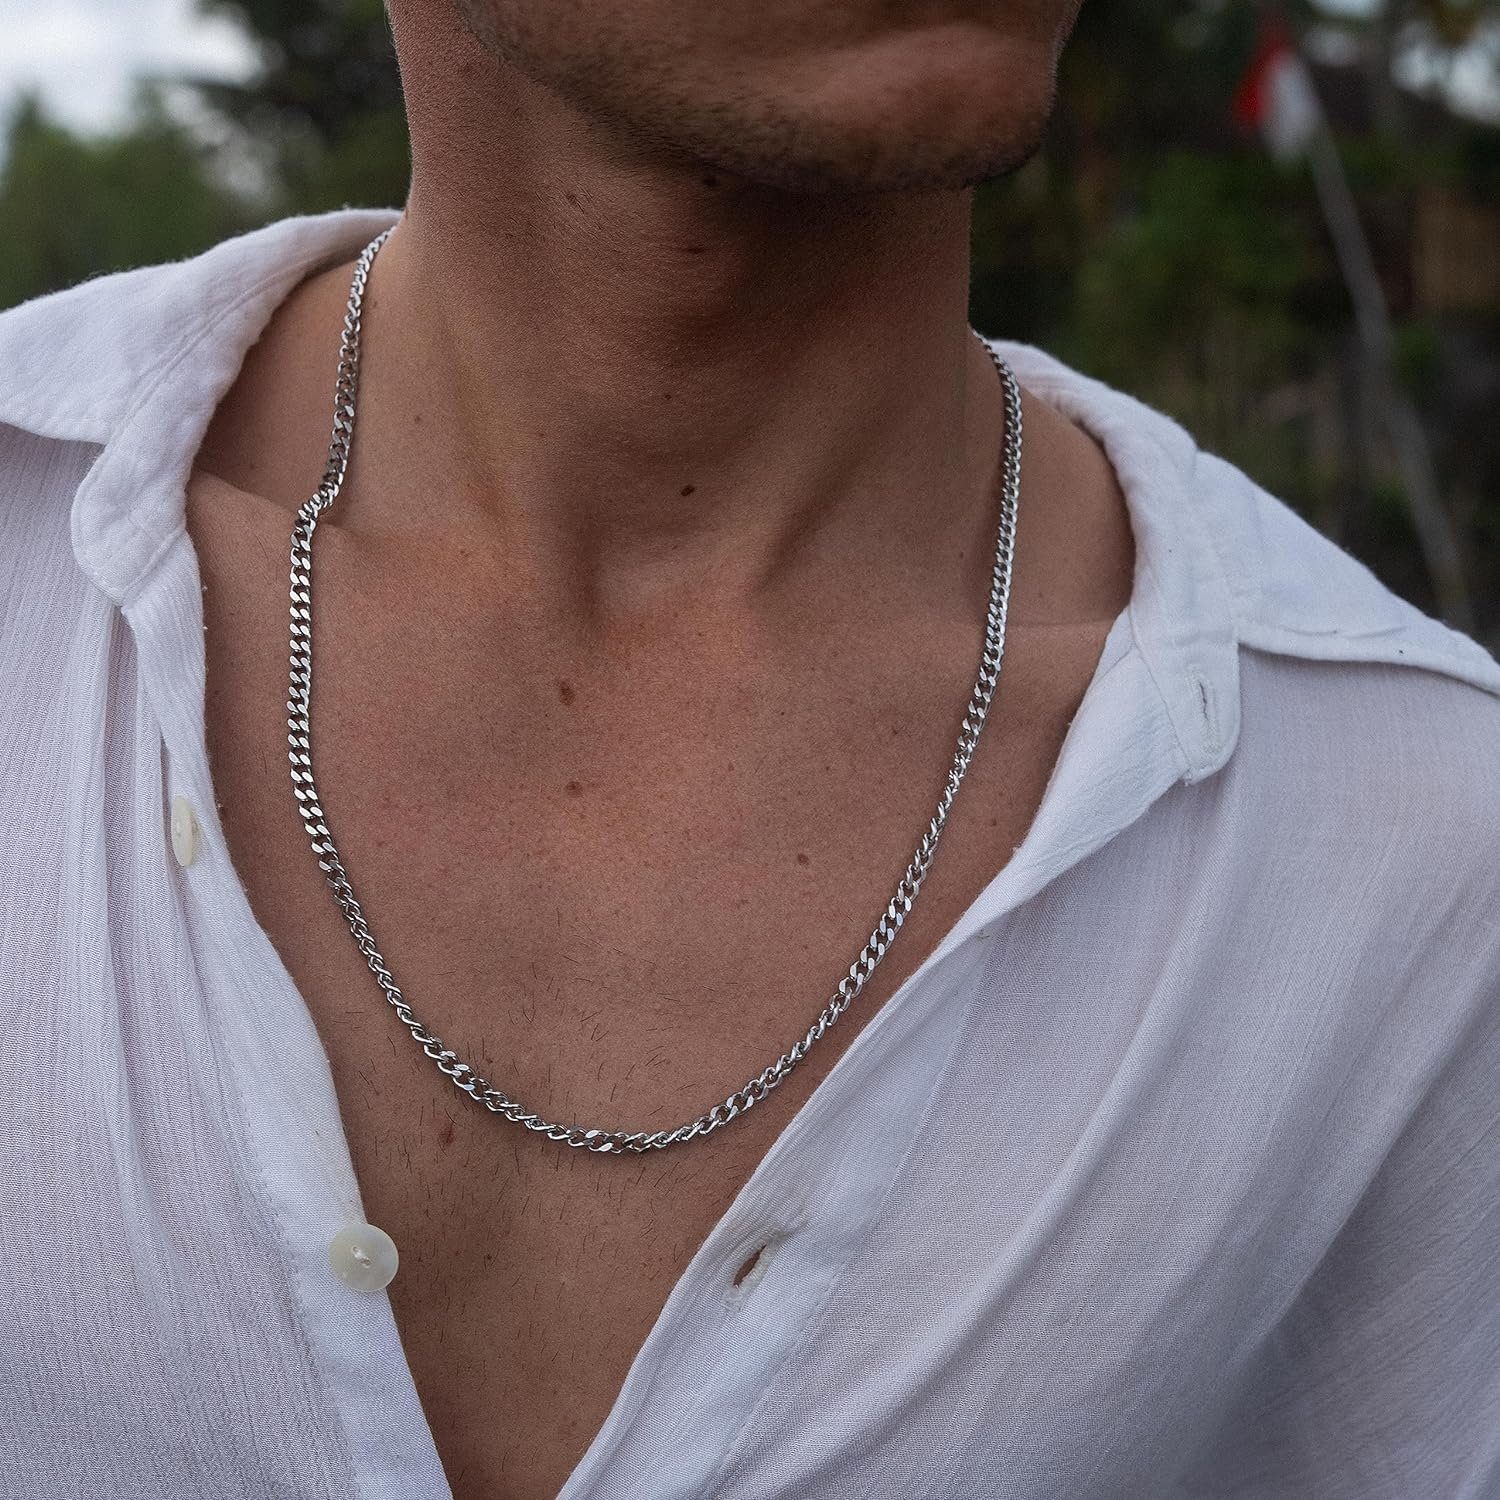 Made by Nami Panzerkette Hochwertige Halskette aus Edelstahl Herren & Damen Robuste Königskette, Gliederkette Halskette Cuban Link Chain Silber